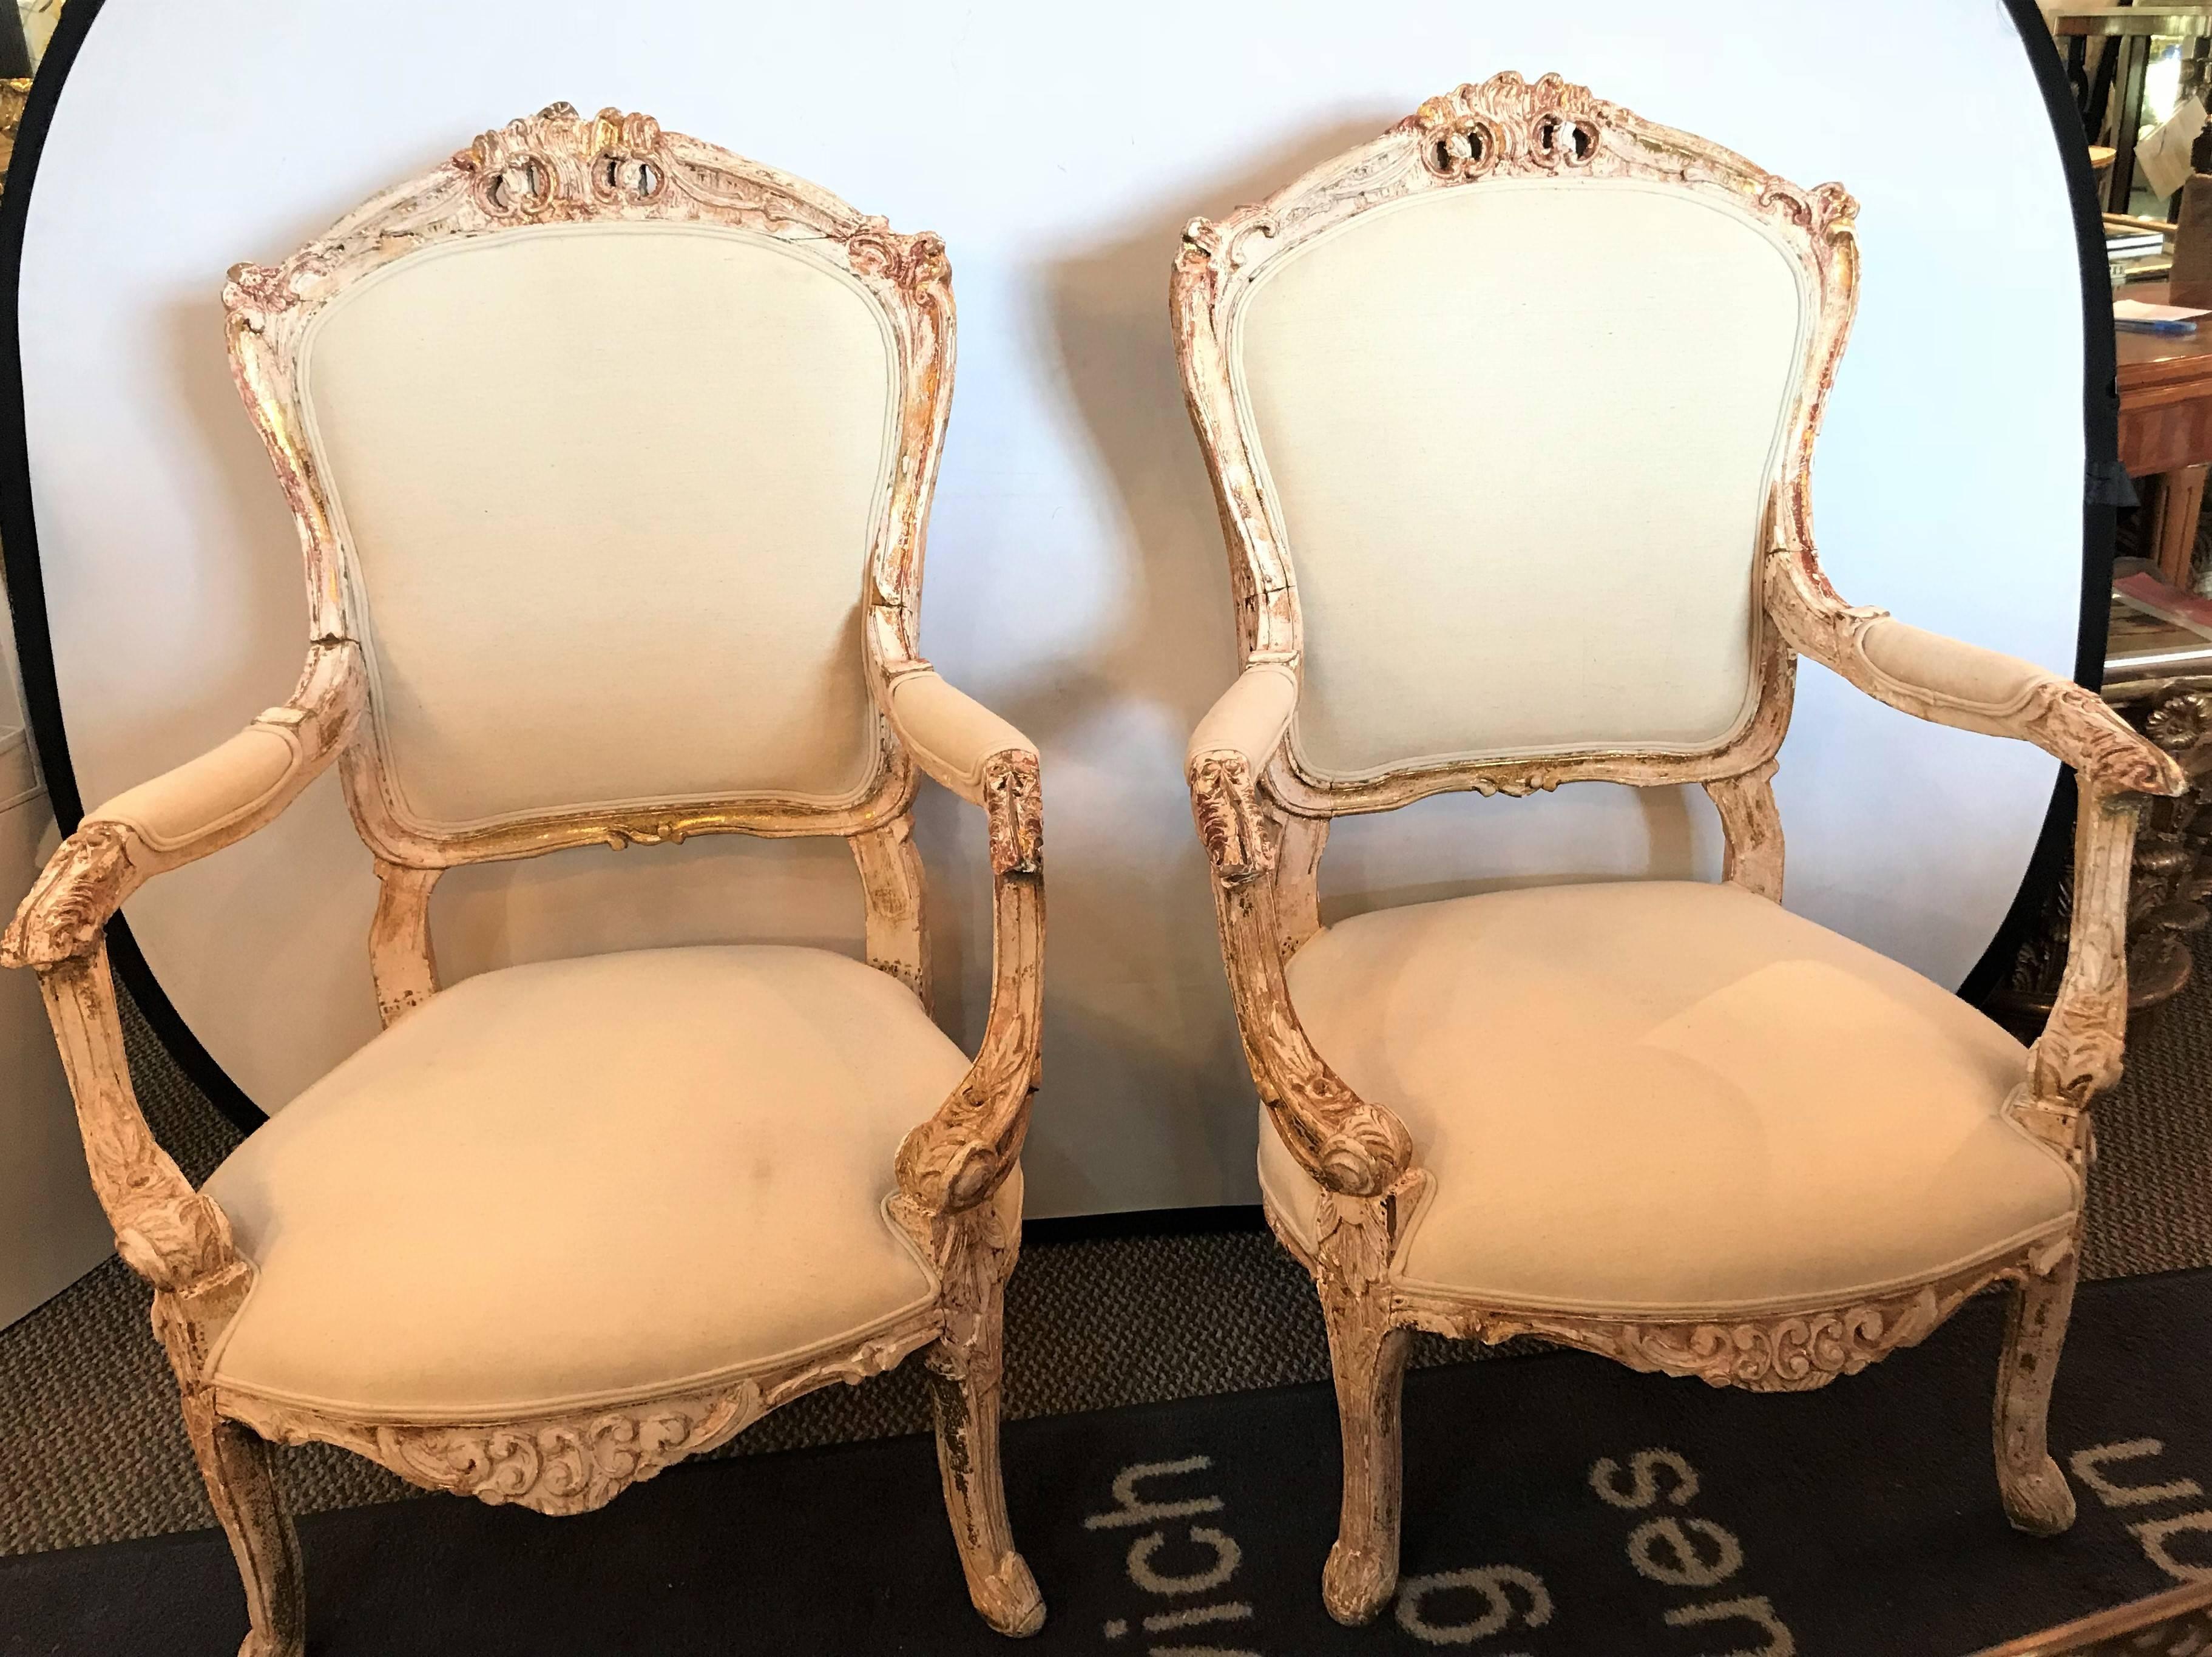 Ein Paar antike Sessel im Stil Louis XV mit lackierten, beschädigten Rahmen. Jeder hat einen wunderschönen antiken Rahmen, der mit neuen Leinenbezügen gewaschen wurde. 
Lxx.